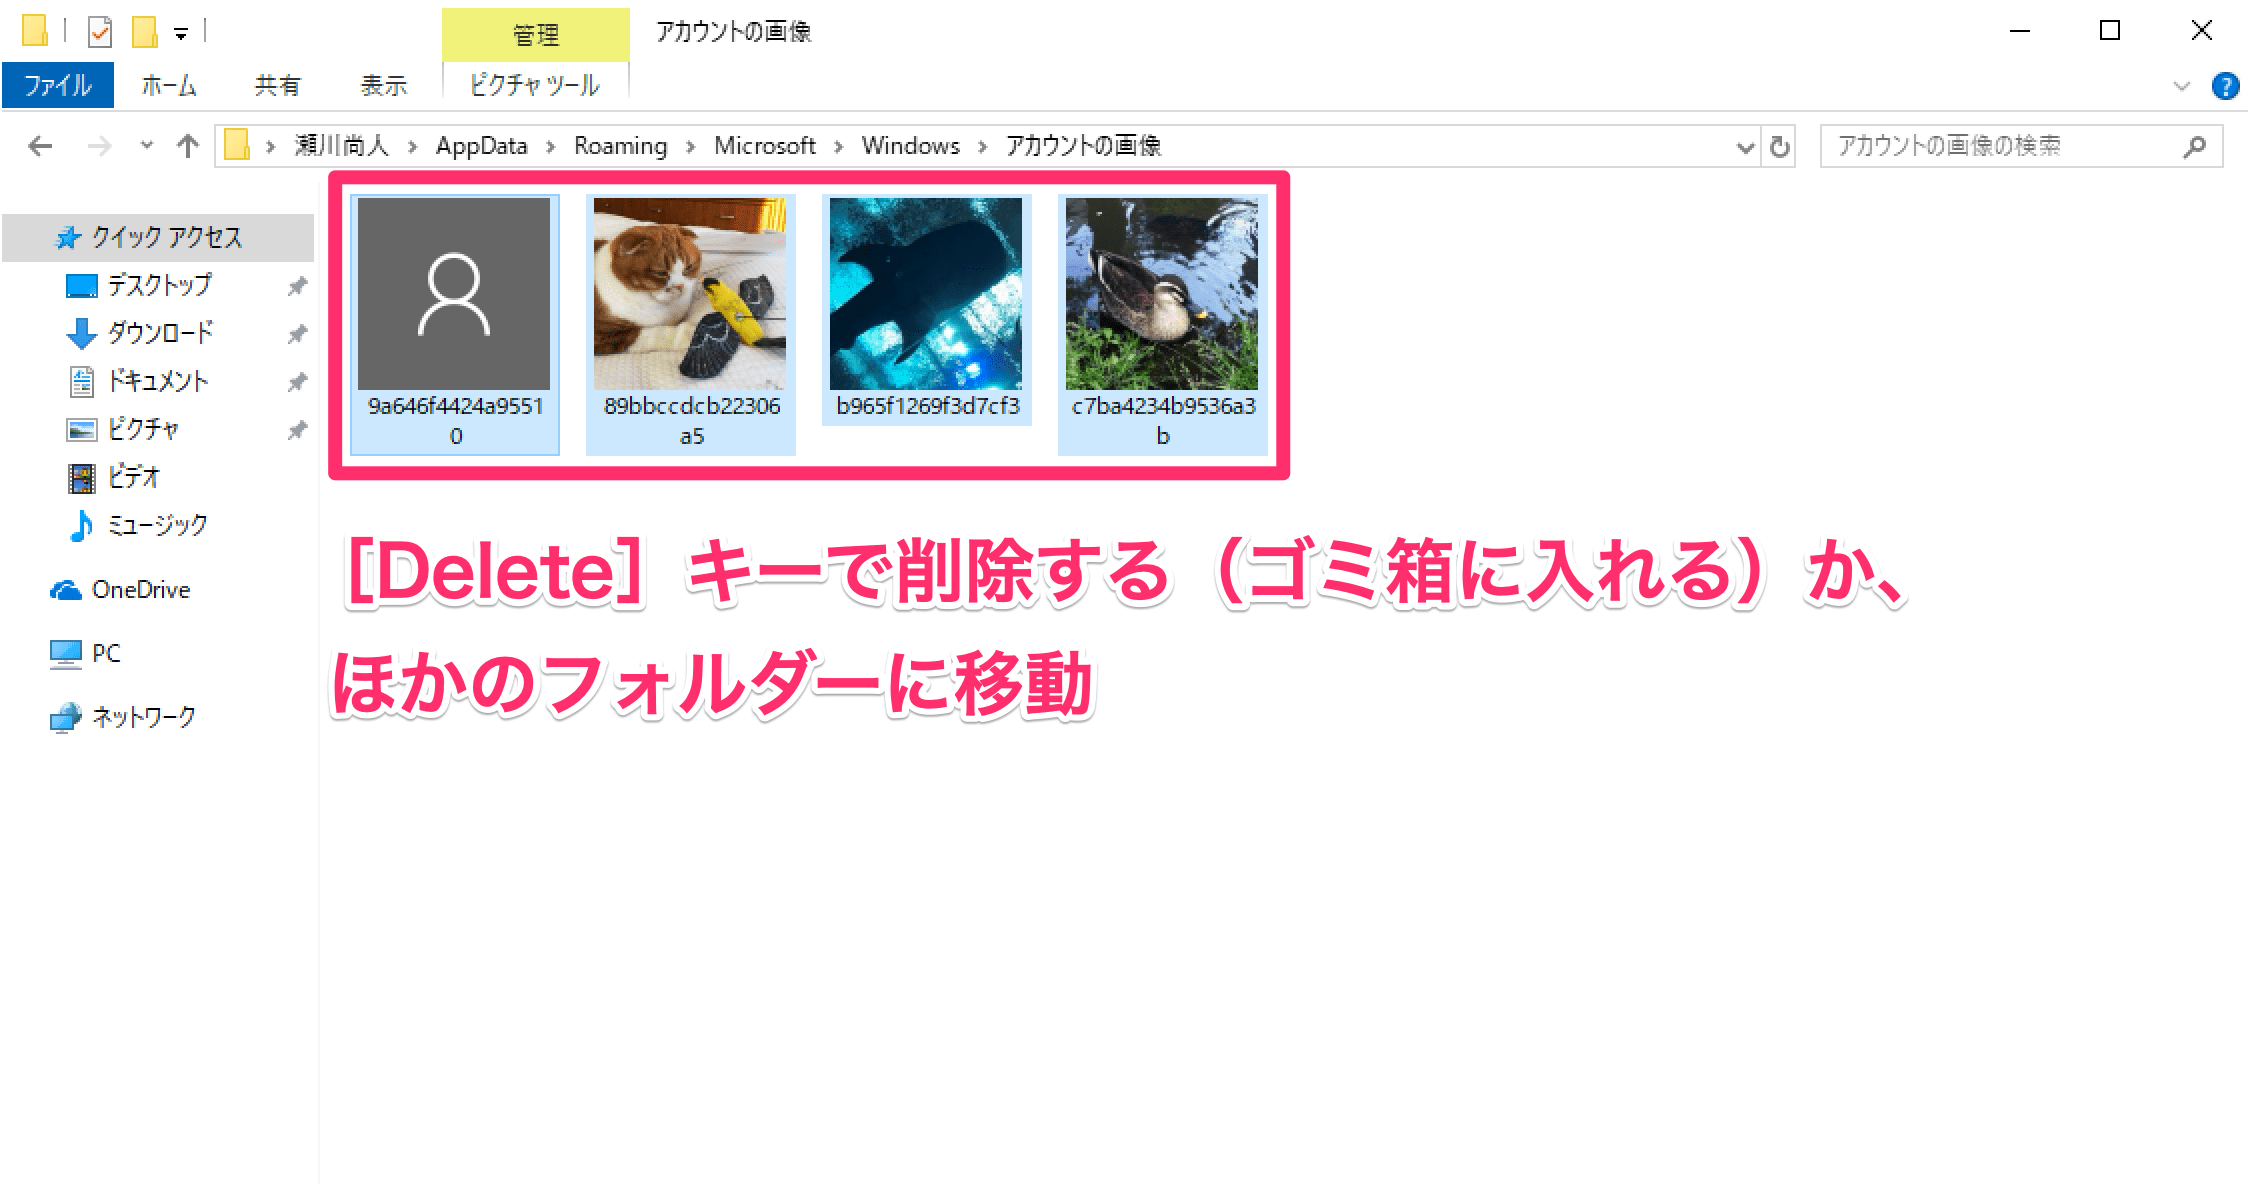 Windows 10のユーザーアカウント画像の履歴を削除する方法。古い写真を非表示に！